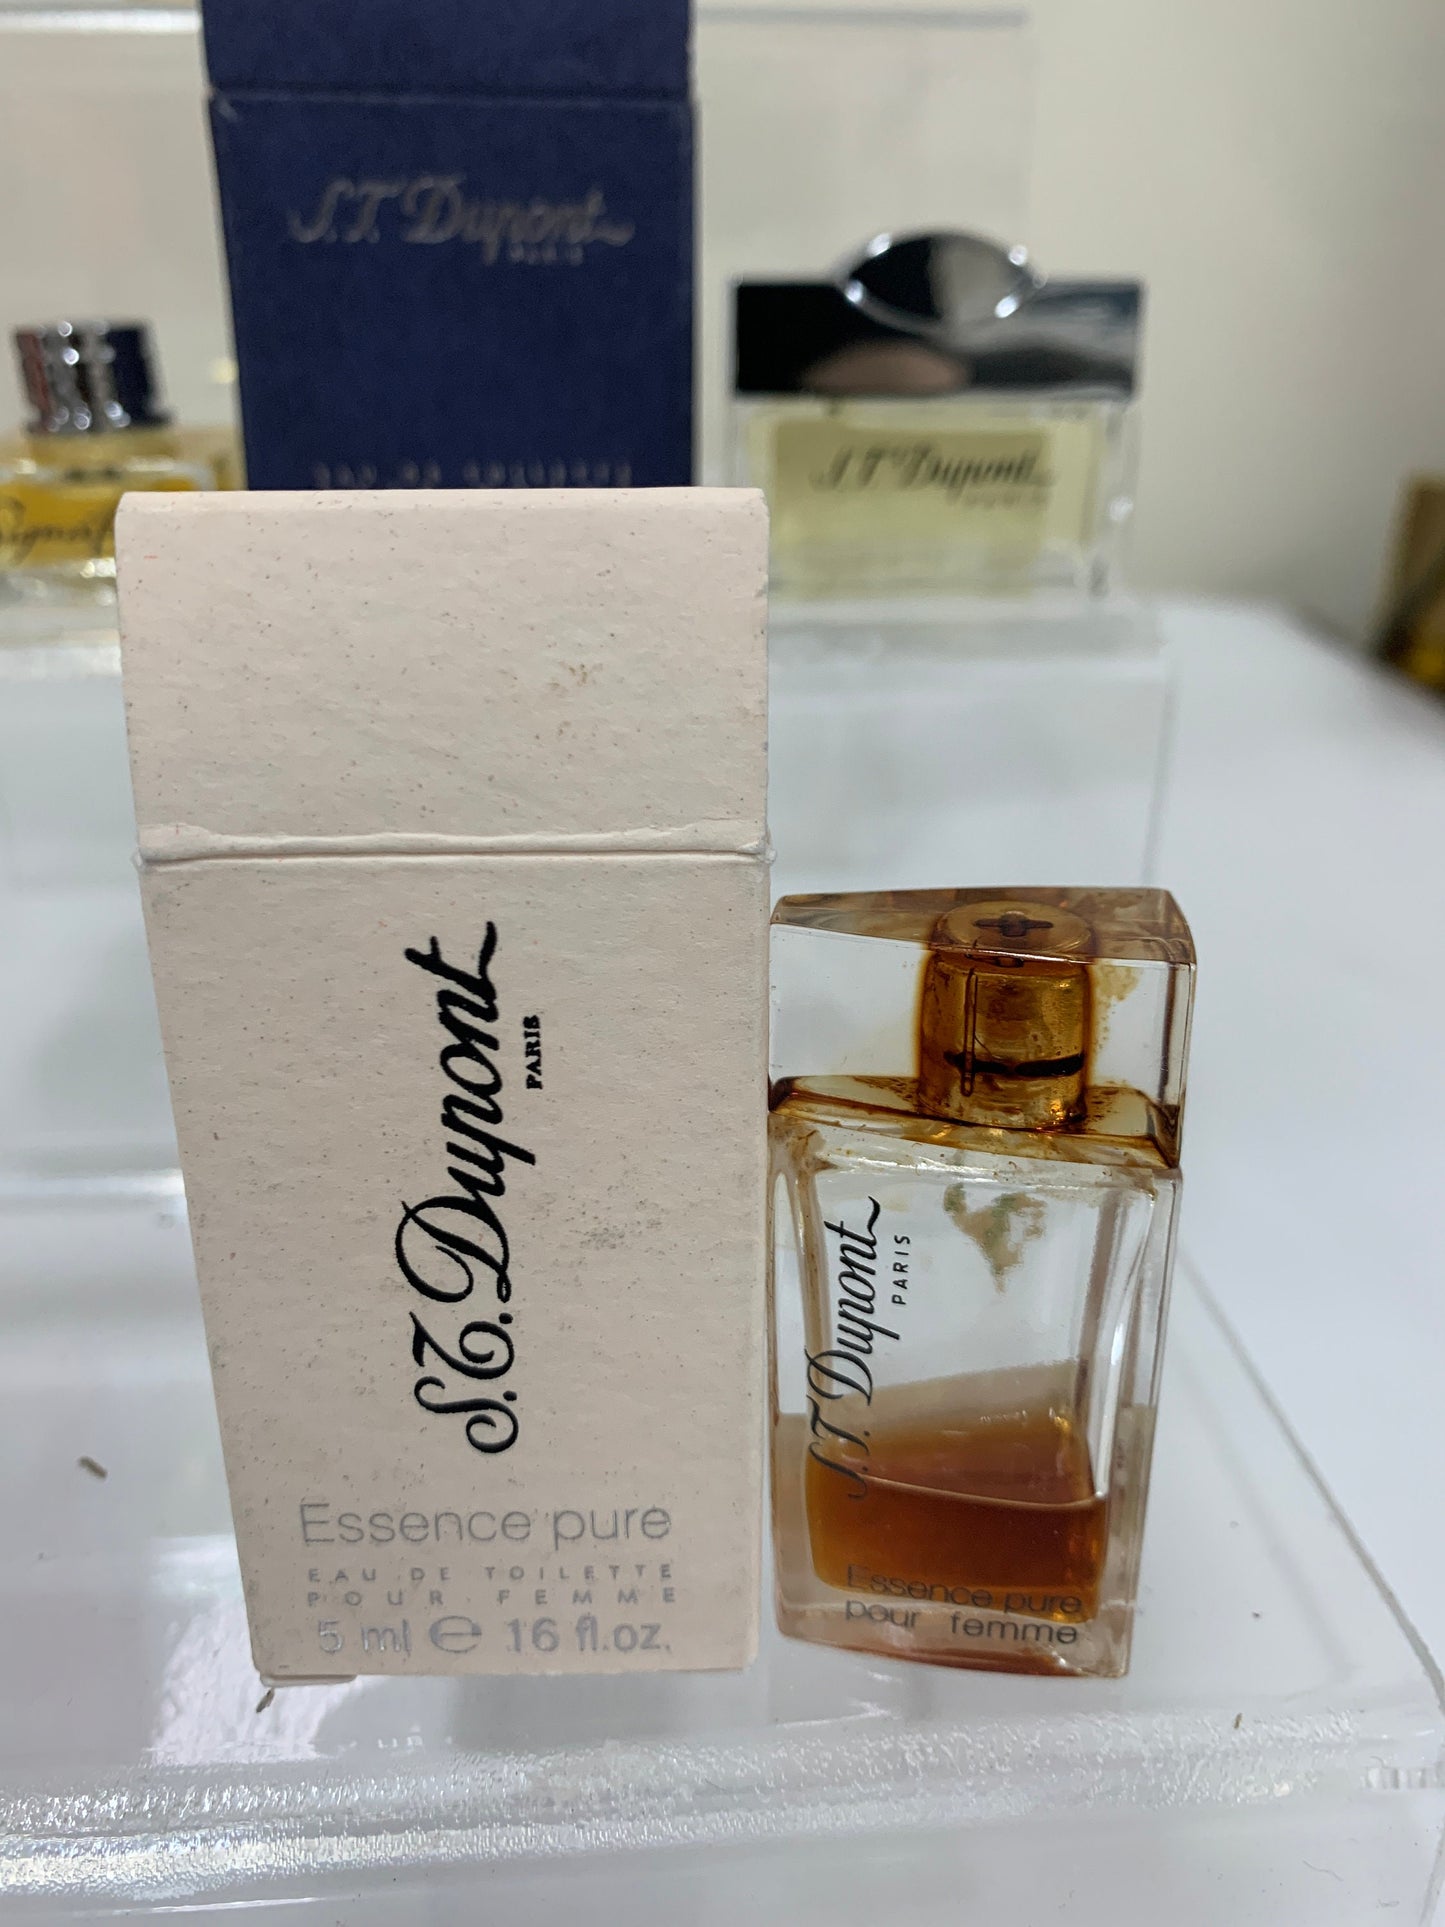 S. T. Dupont 5ml EDT Eau de Toilette Essence Pure 0.17 oz Parfum Perfume